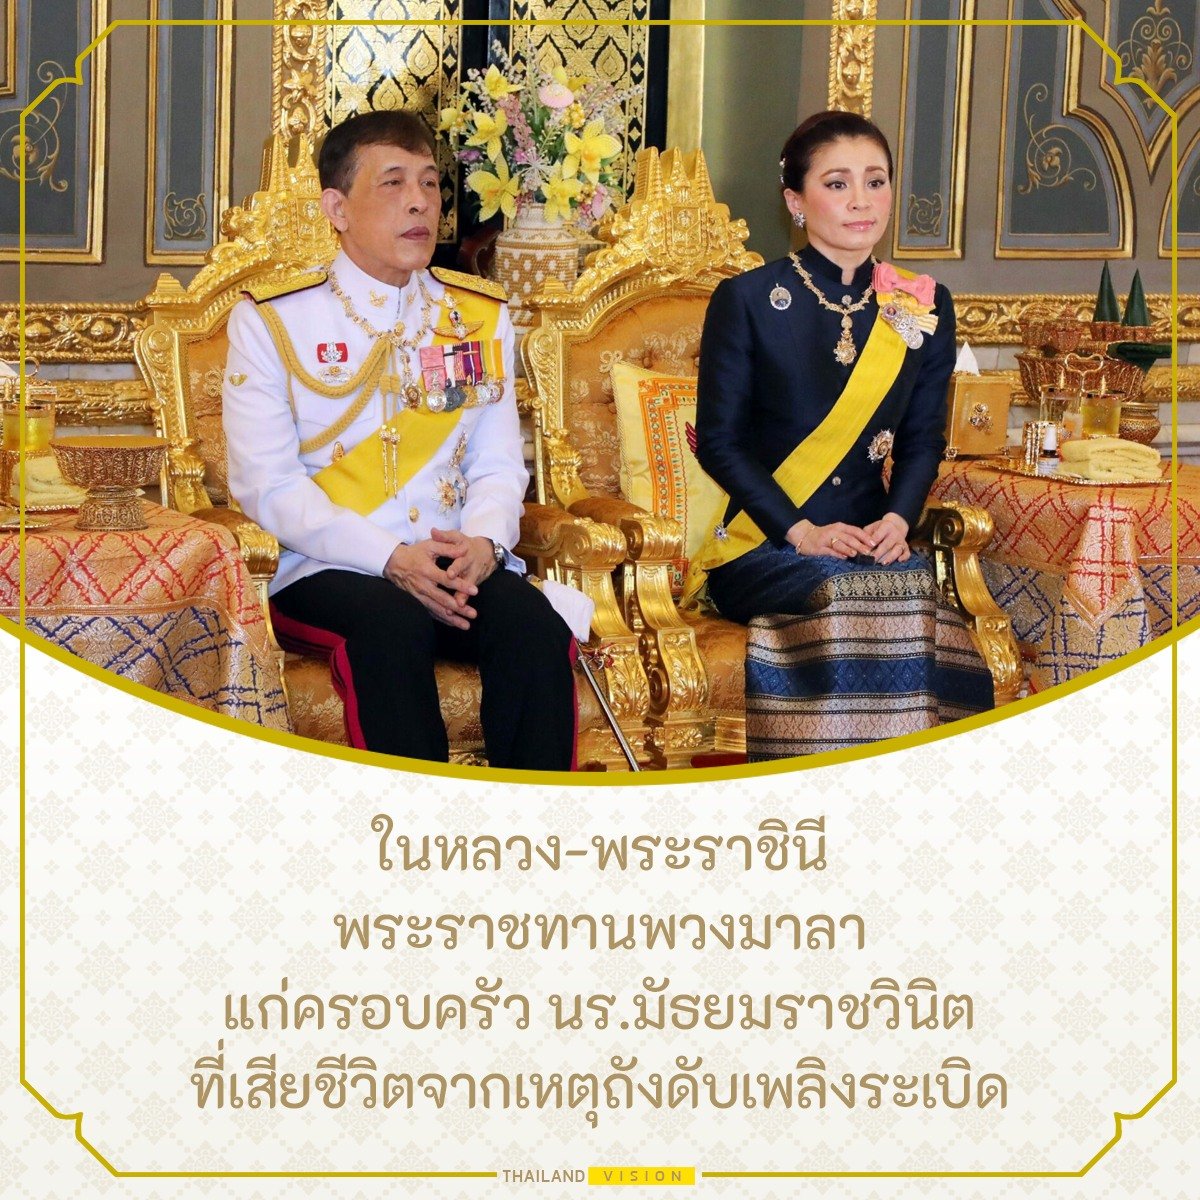 ในหลวง-พระราชินี
พระราชทานพวงมาลา
แก่ครอบครัว นร.มัธยมราชวินิต
ที่เสียชีวิตจากเหตุถังดับเพลิงระเบิด
#ราชวินิตมัธยม 
.
อ่านต่อได้ที่
facebook.com/thvi5ion/posts…
.
ติดตามข้อมูลข่าวสาร รู้ไทย รู้โลก กับ Thailand Vision ได้ที่
-thailandvision.co
-youtube.com/c/Thailandvisi…